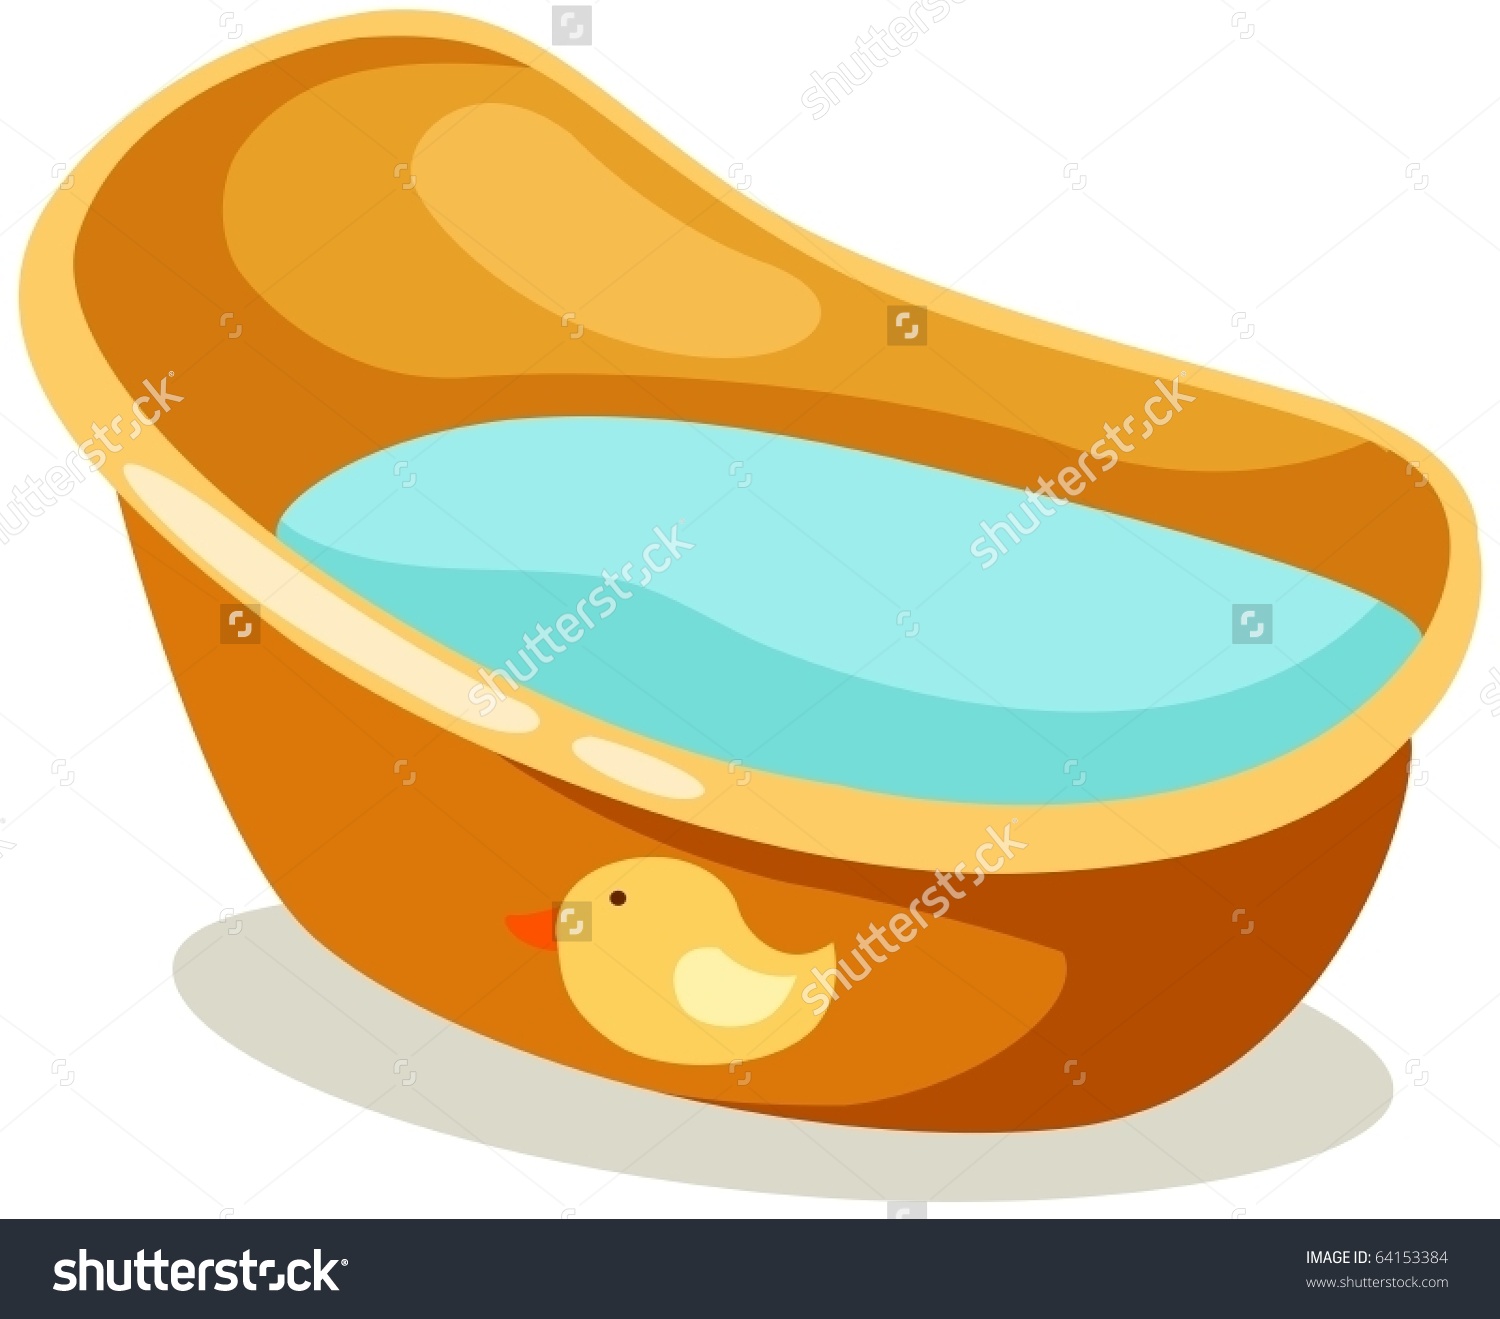 bathtub clipart baby bath